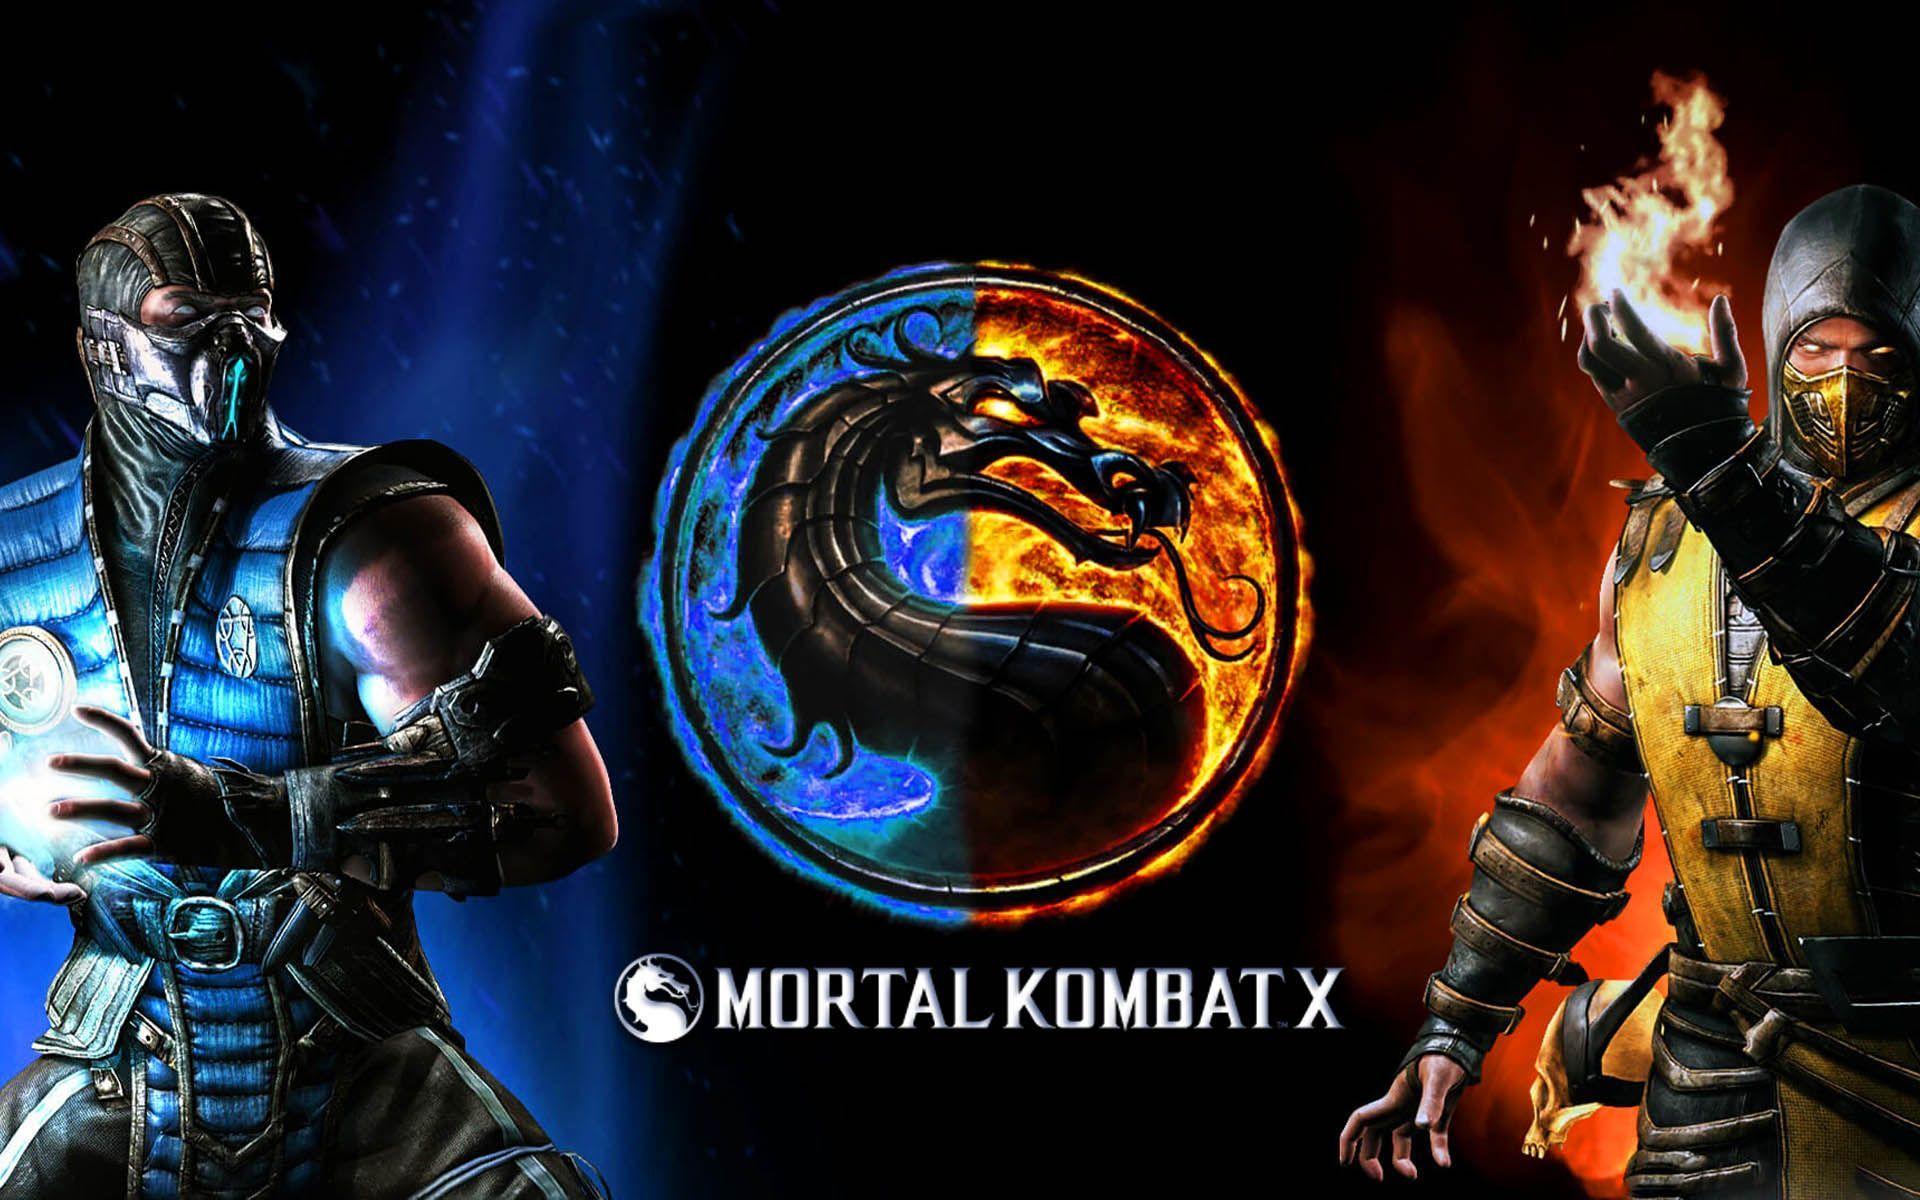 Mortal Kombat X SubZero vs Scorpion Finish Him Wallpaper. Games